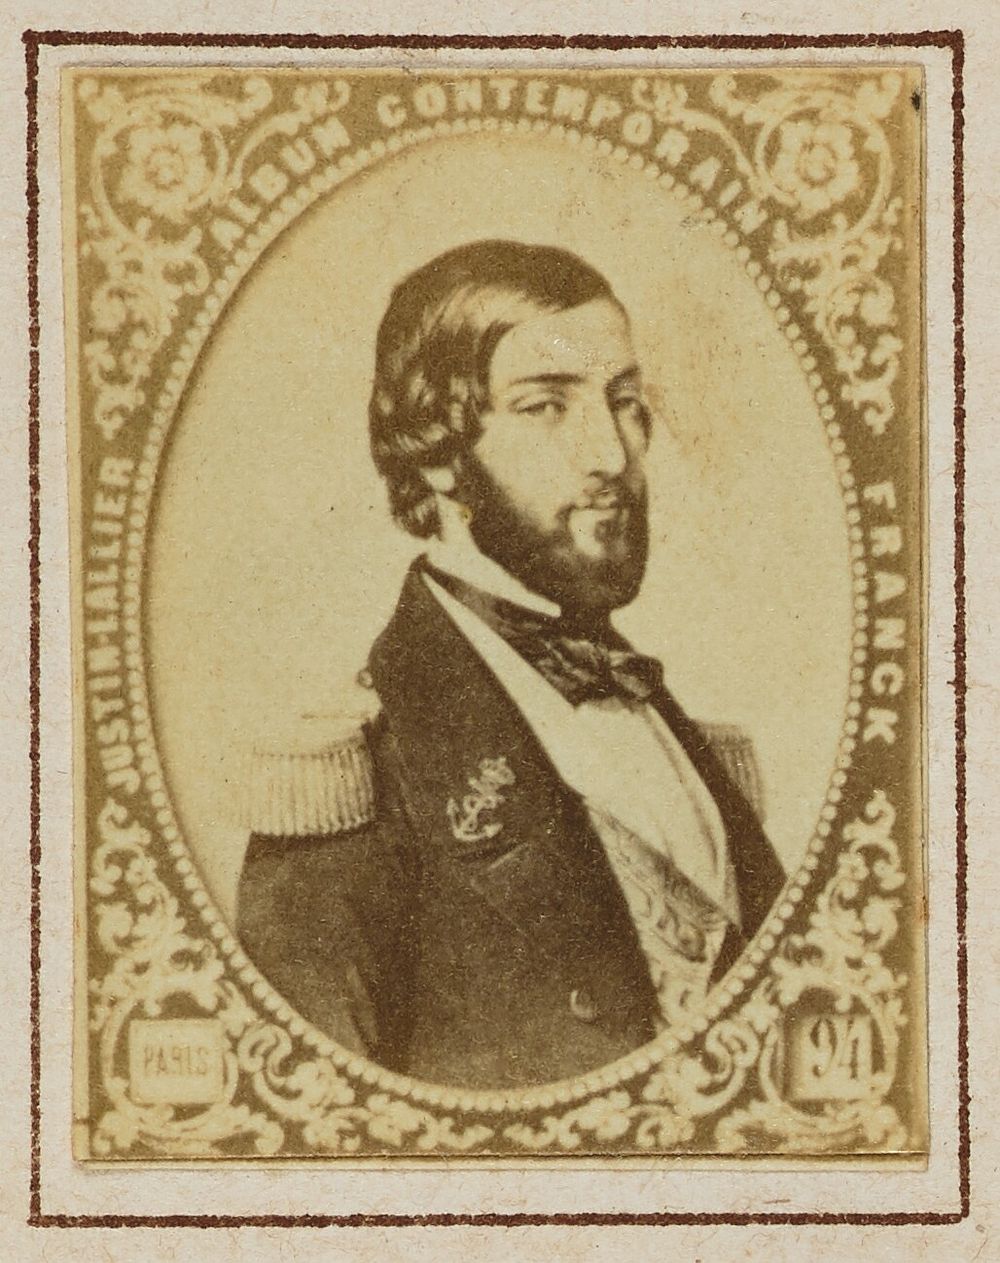 François d'Orléans, Prince of Joinville by Franck François Marie Louis Alexandre Gobinet de Villecholles and Justin Lallier